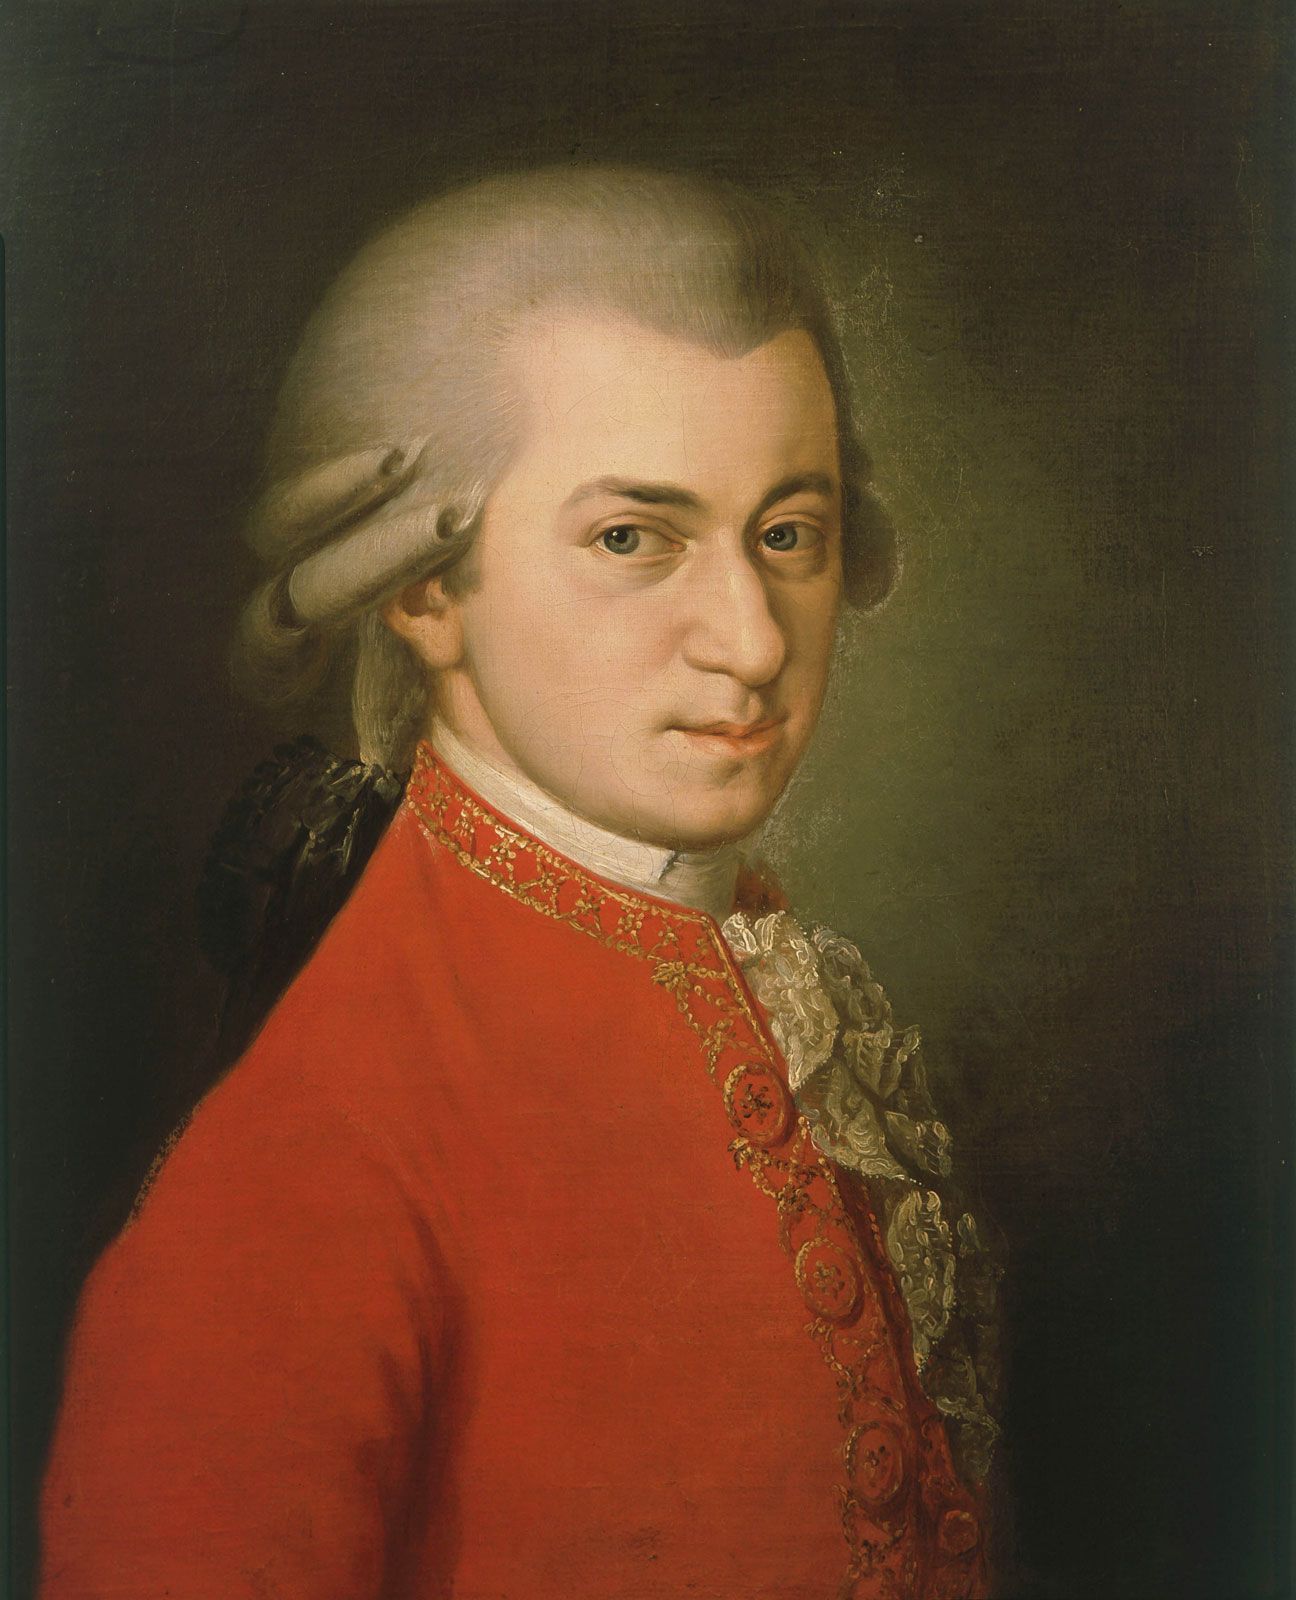  Taariikh nololeedka Wolfgang Amadeus Mozart